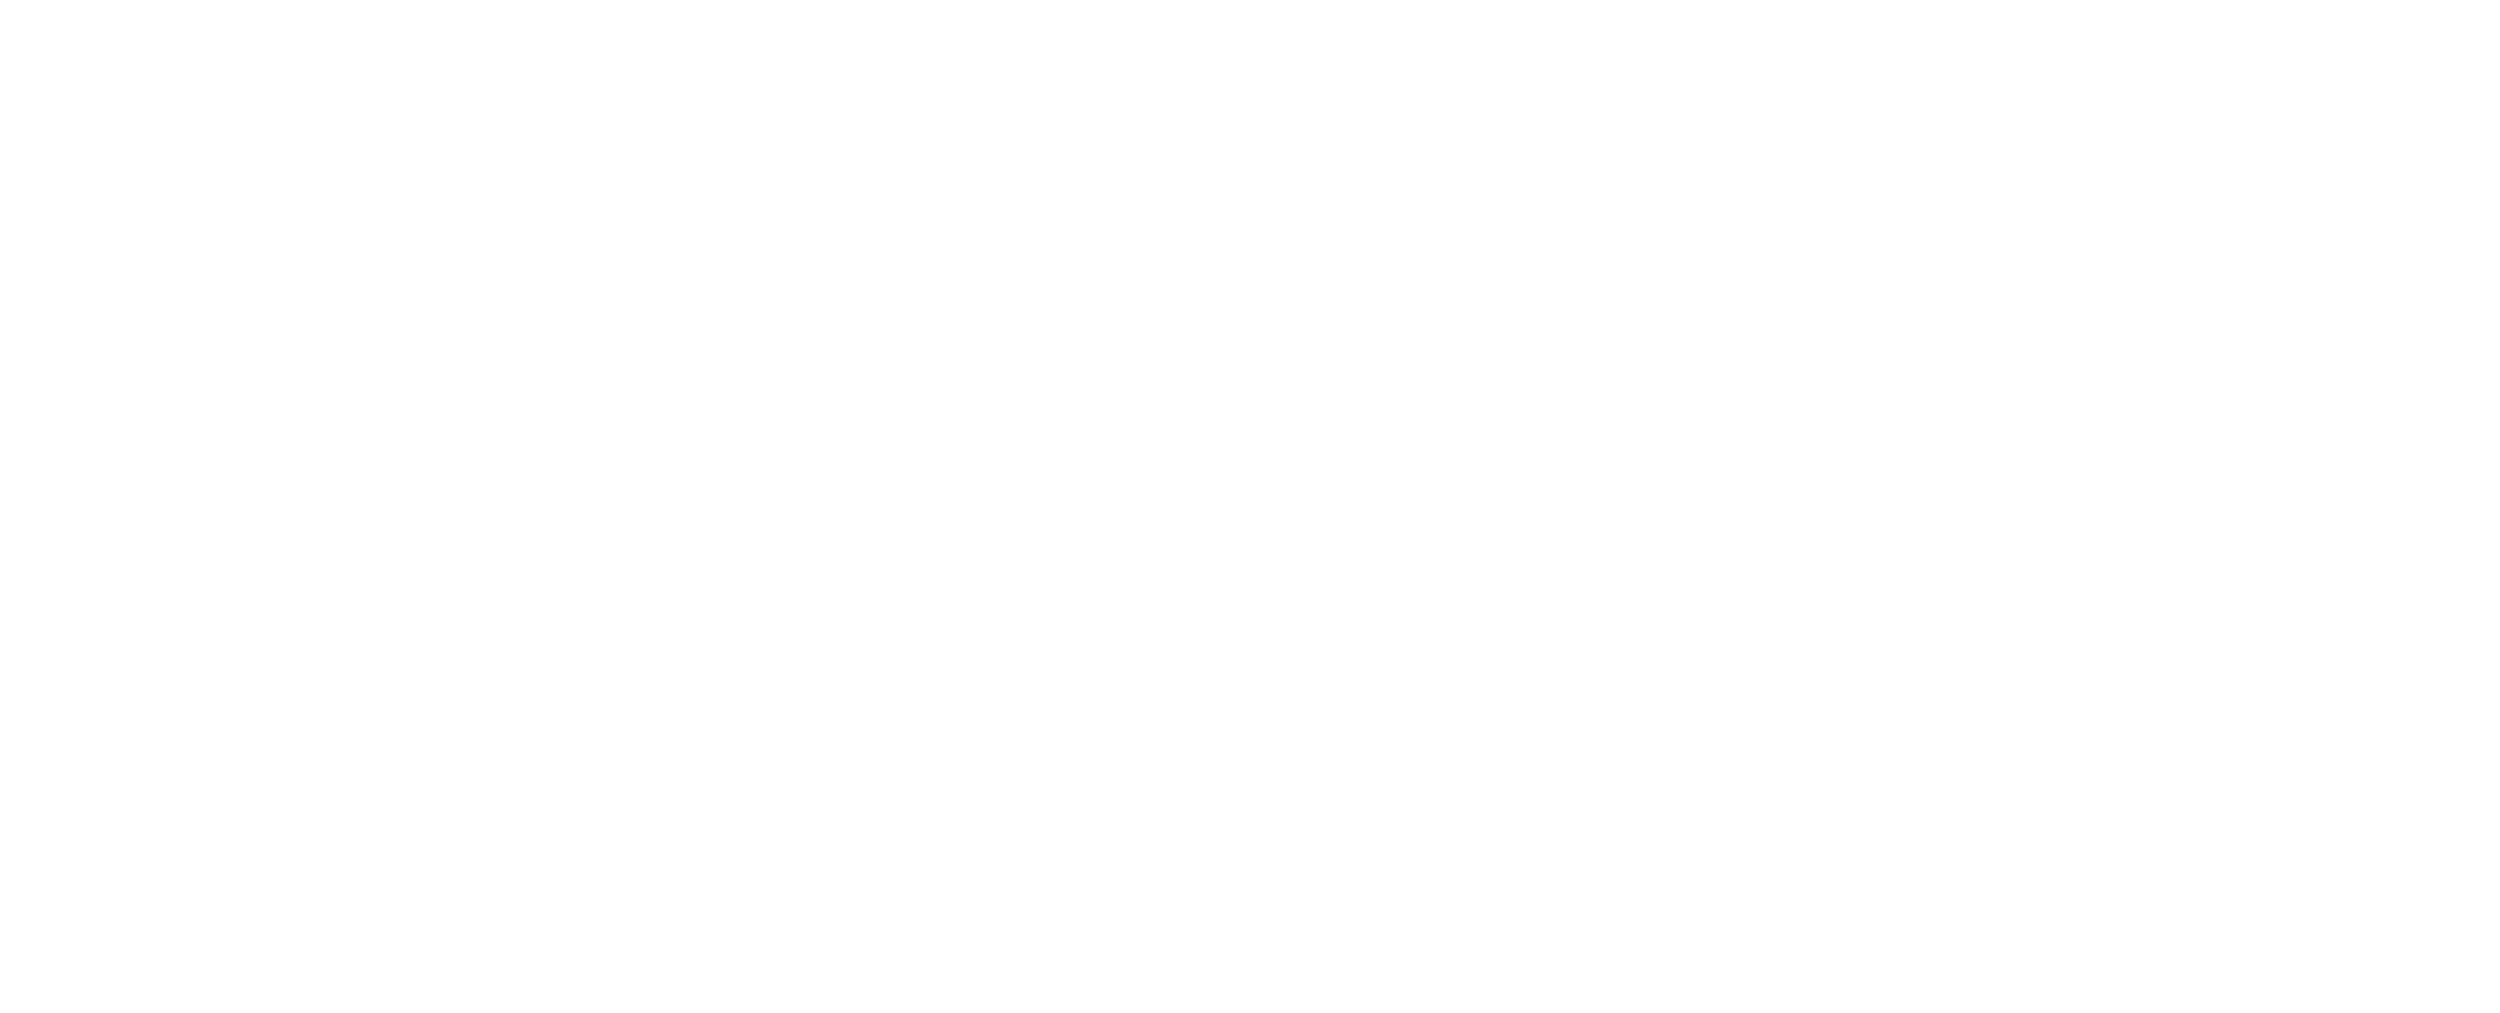 Lenoue Integrative Medicine